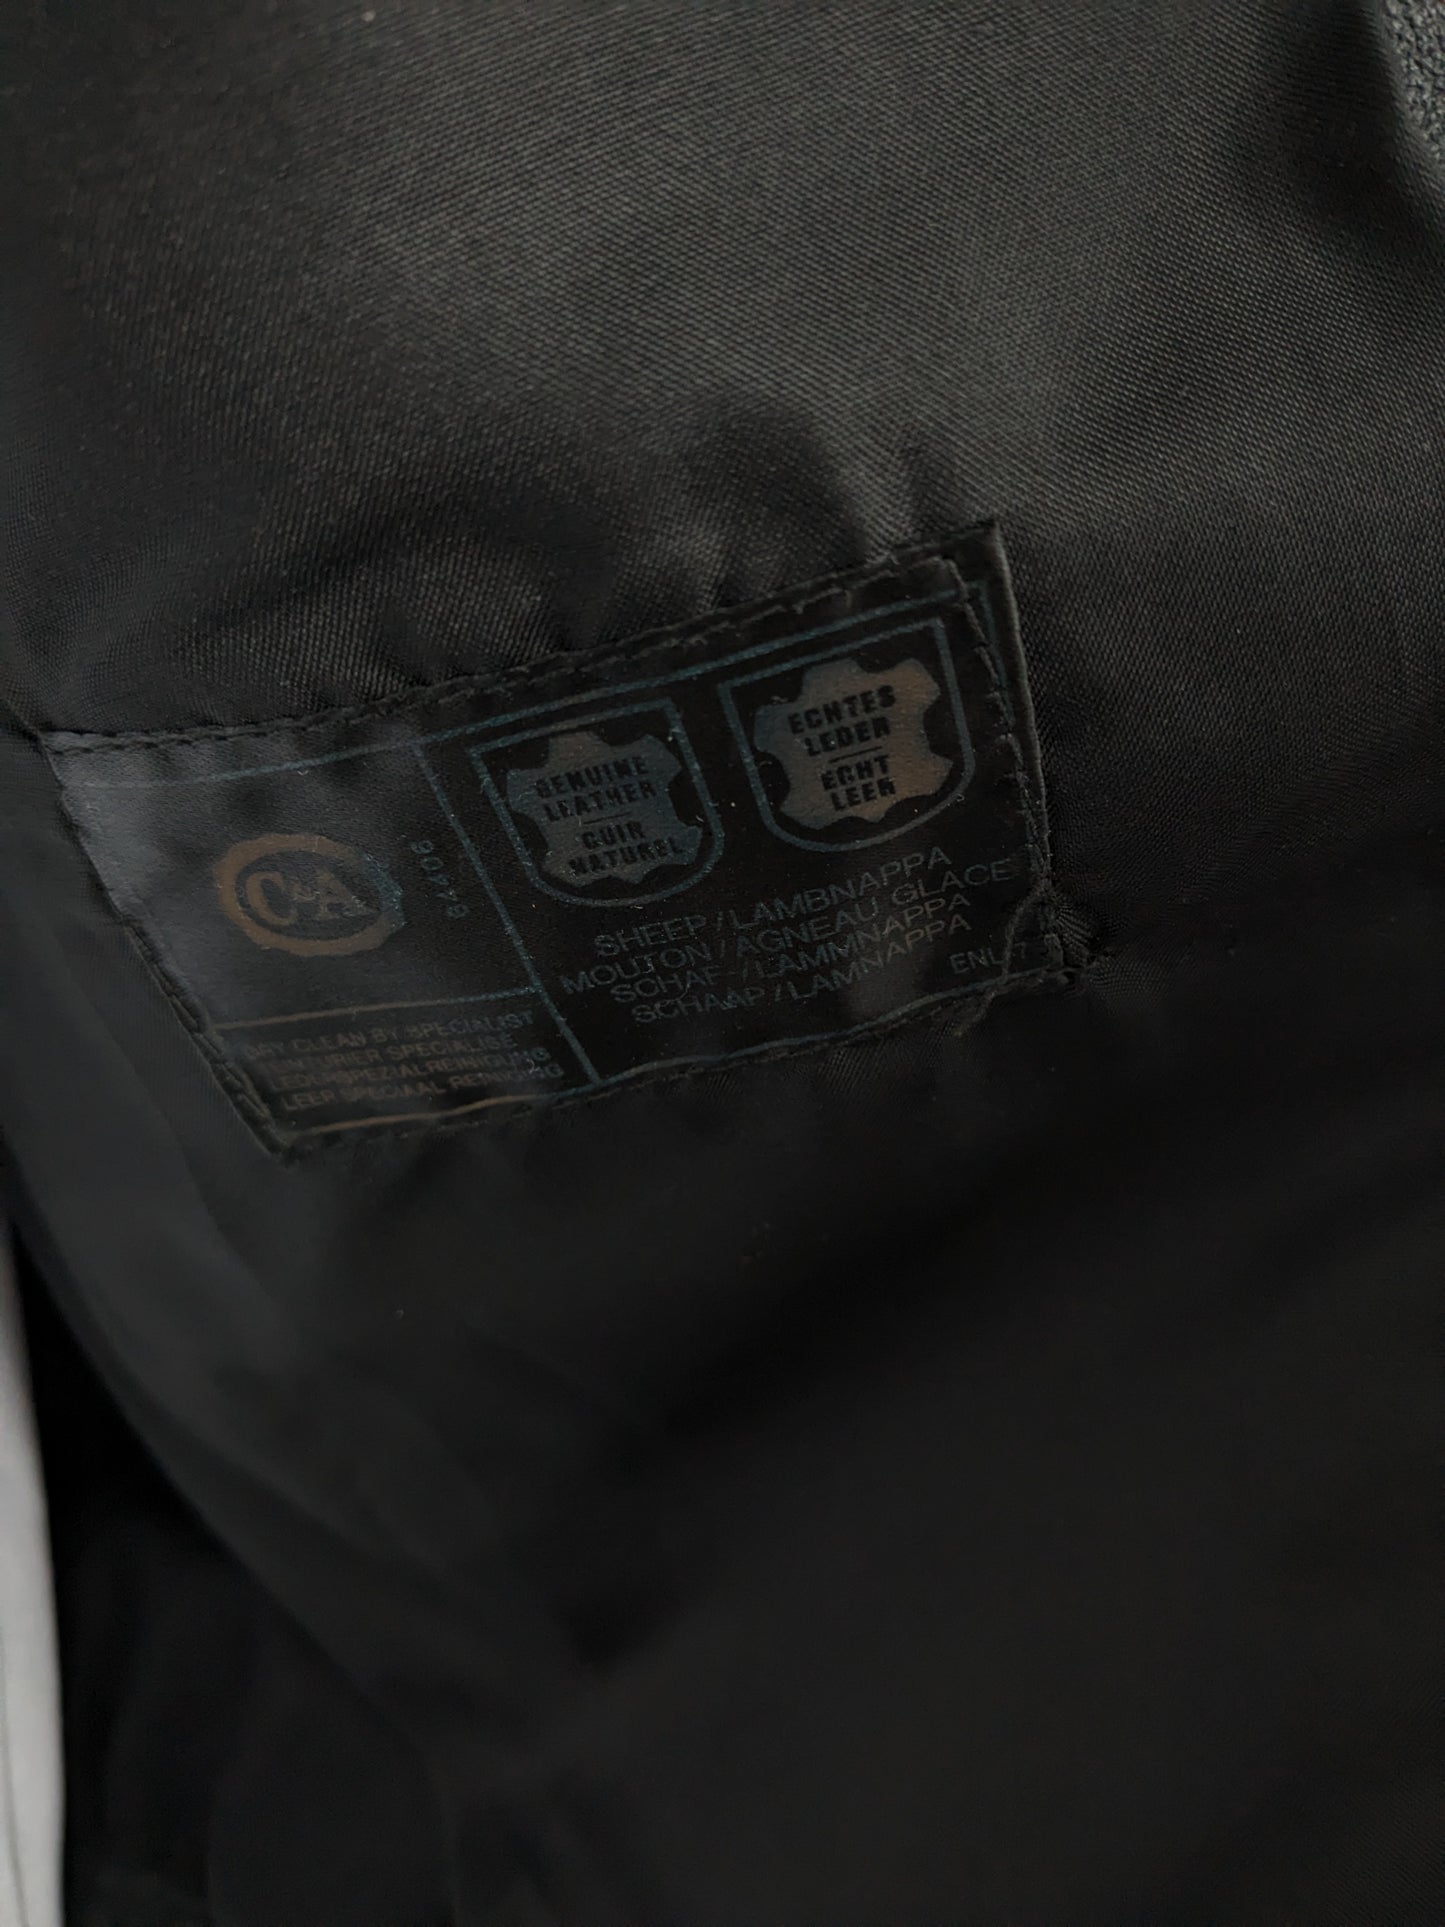 El calentador / chaleco del cuerpo de cuero C&A de los 80 vintage con bolsas, aplicaciones de cremallera y pernos de prensa. Negro. Talla M.